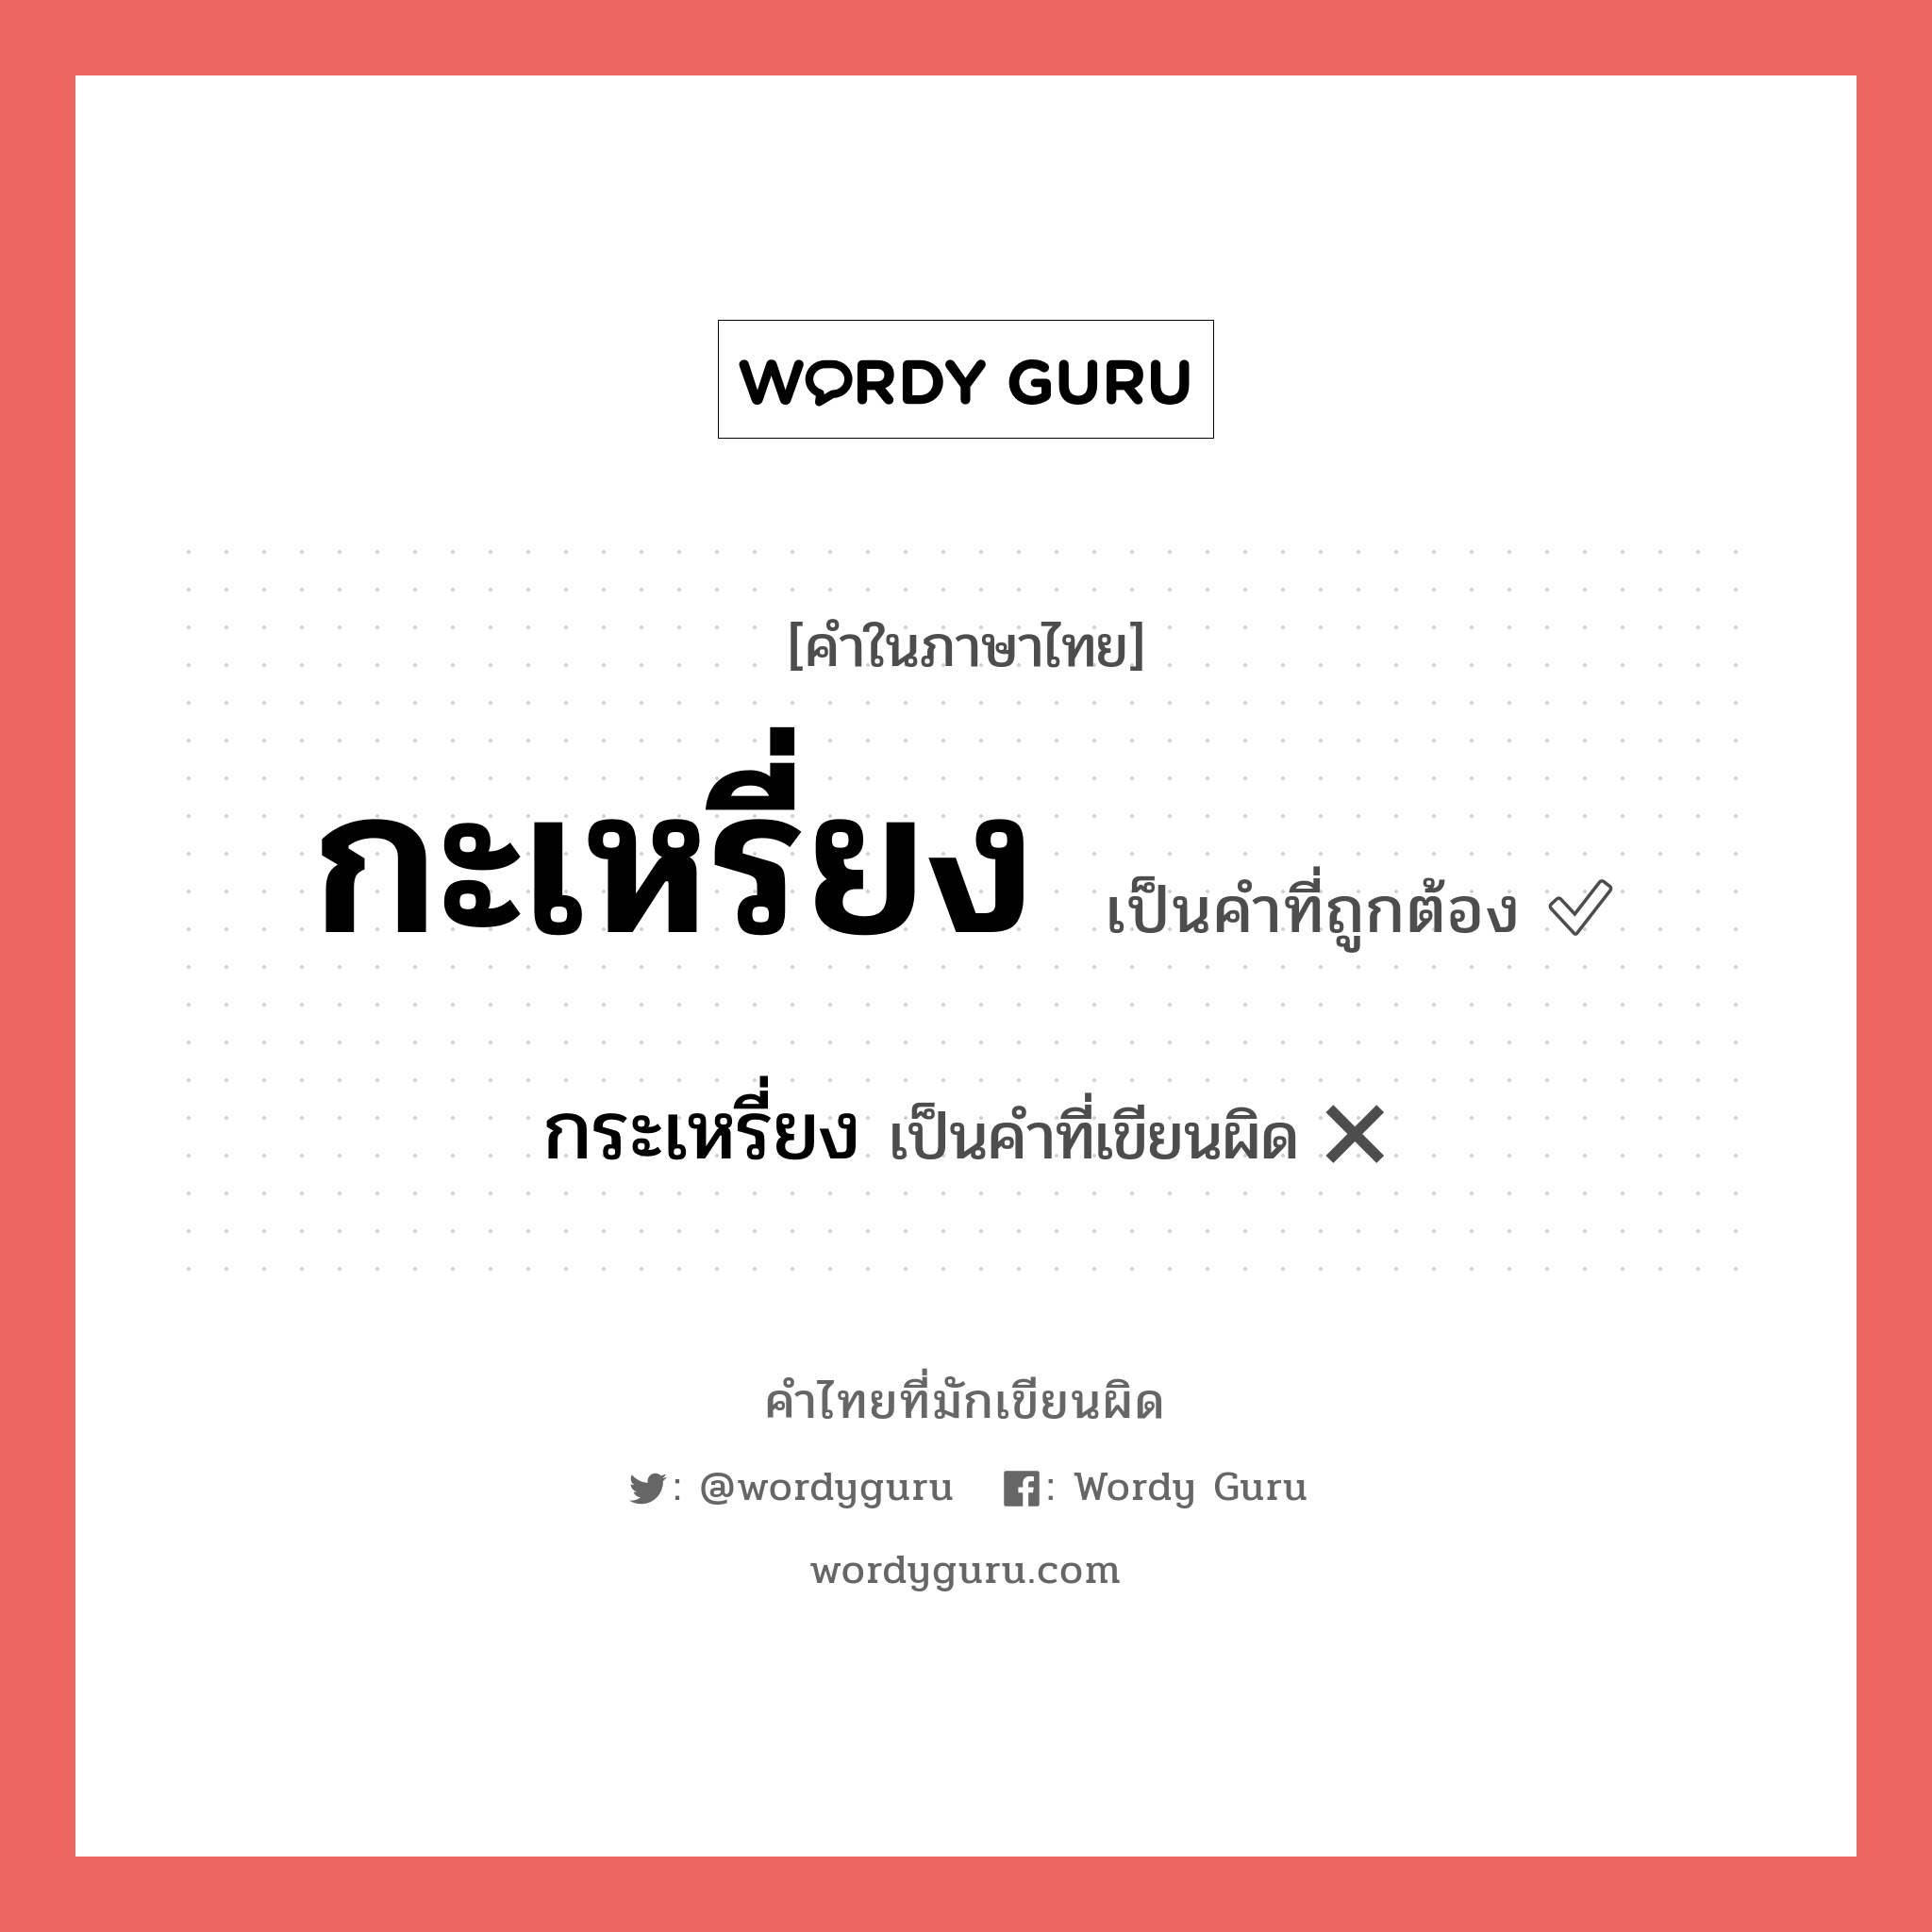 กะเหรี่ยง หรือ กระเหรี่ยง คำไหนเขียนถูก?, คำในภาษาไทยที่มักเขียนผิด กะเหรี่ยง คำที่ผิด ❌ กระเหรี่ยง